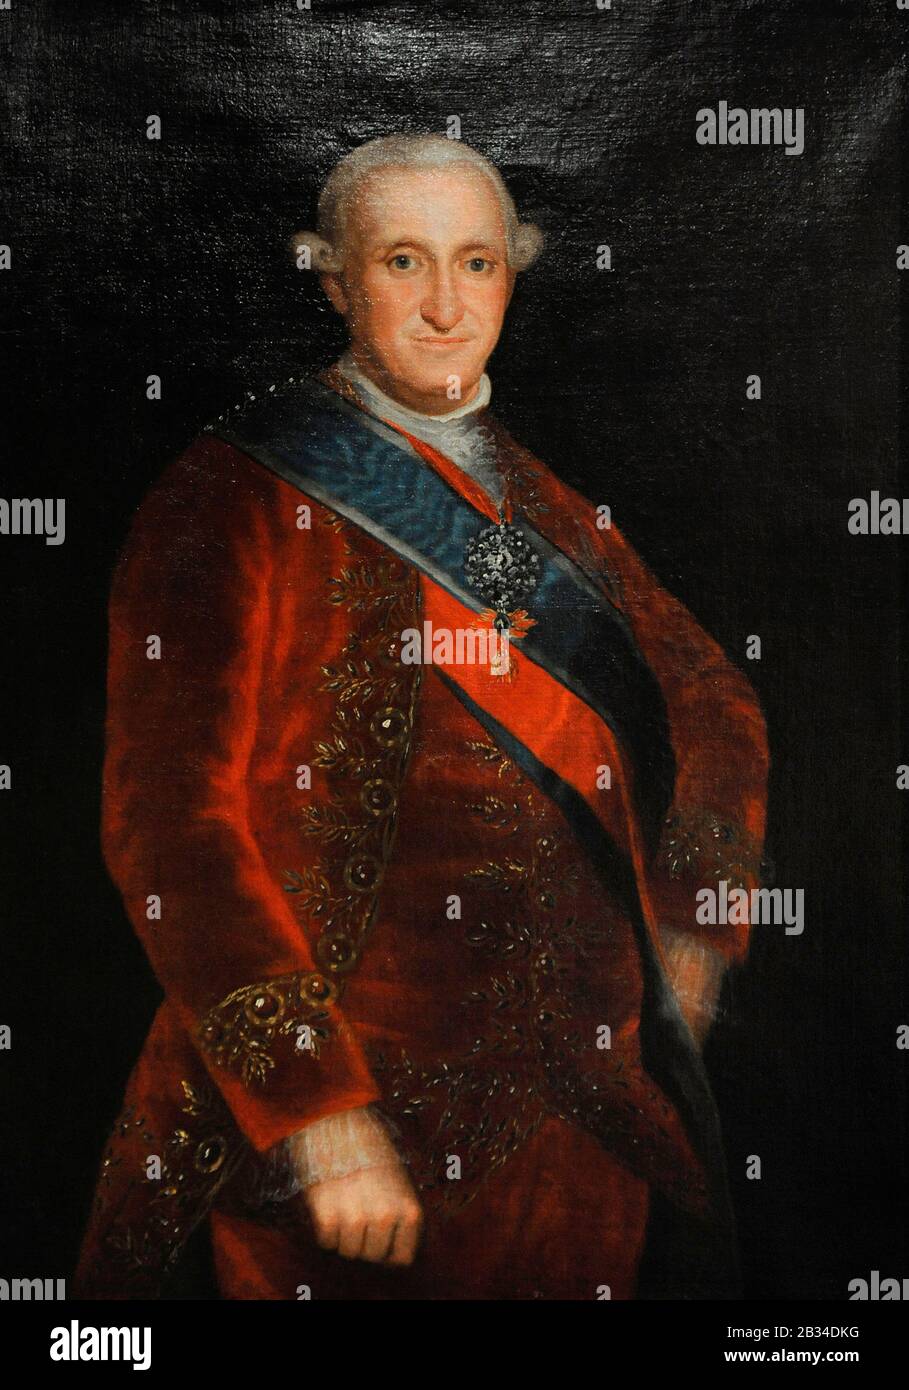 Karl IV. (1748-1819). König von Spanien (1788-1808). Porträt von Agustin Esteve y Marques (1753-1820), ca. Lazaro Galdiano Museum. Madrid. Spanien. Stockfoto